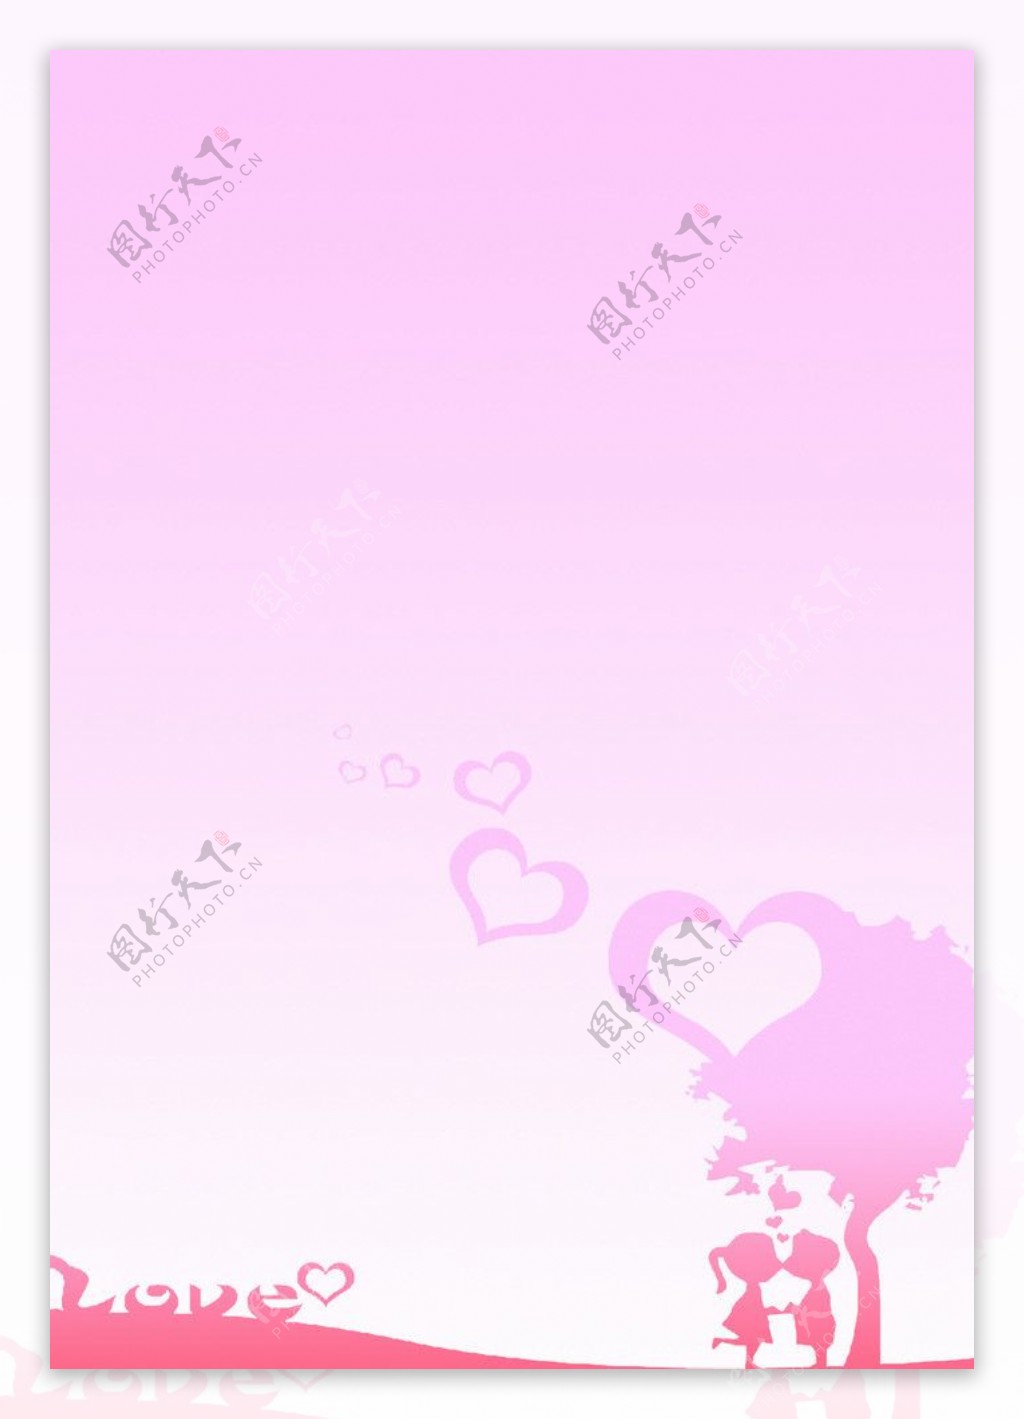 浪漫粉色背景图片